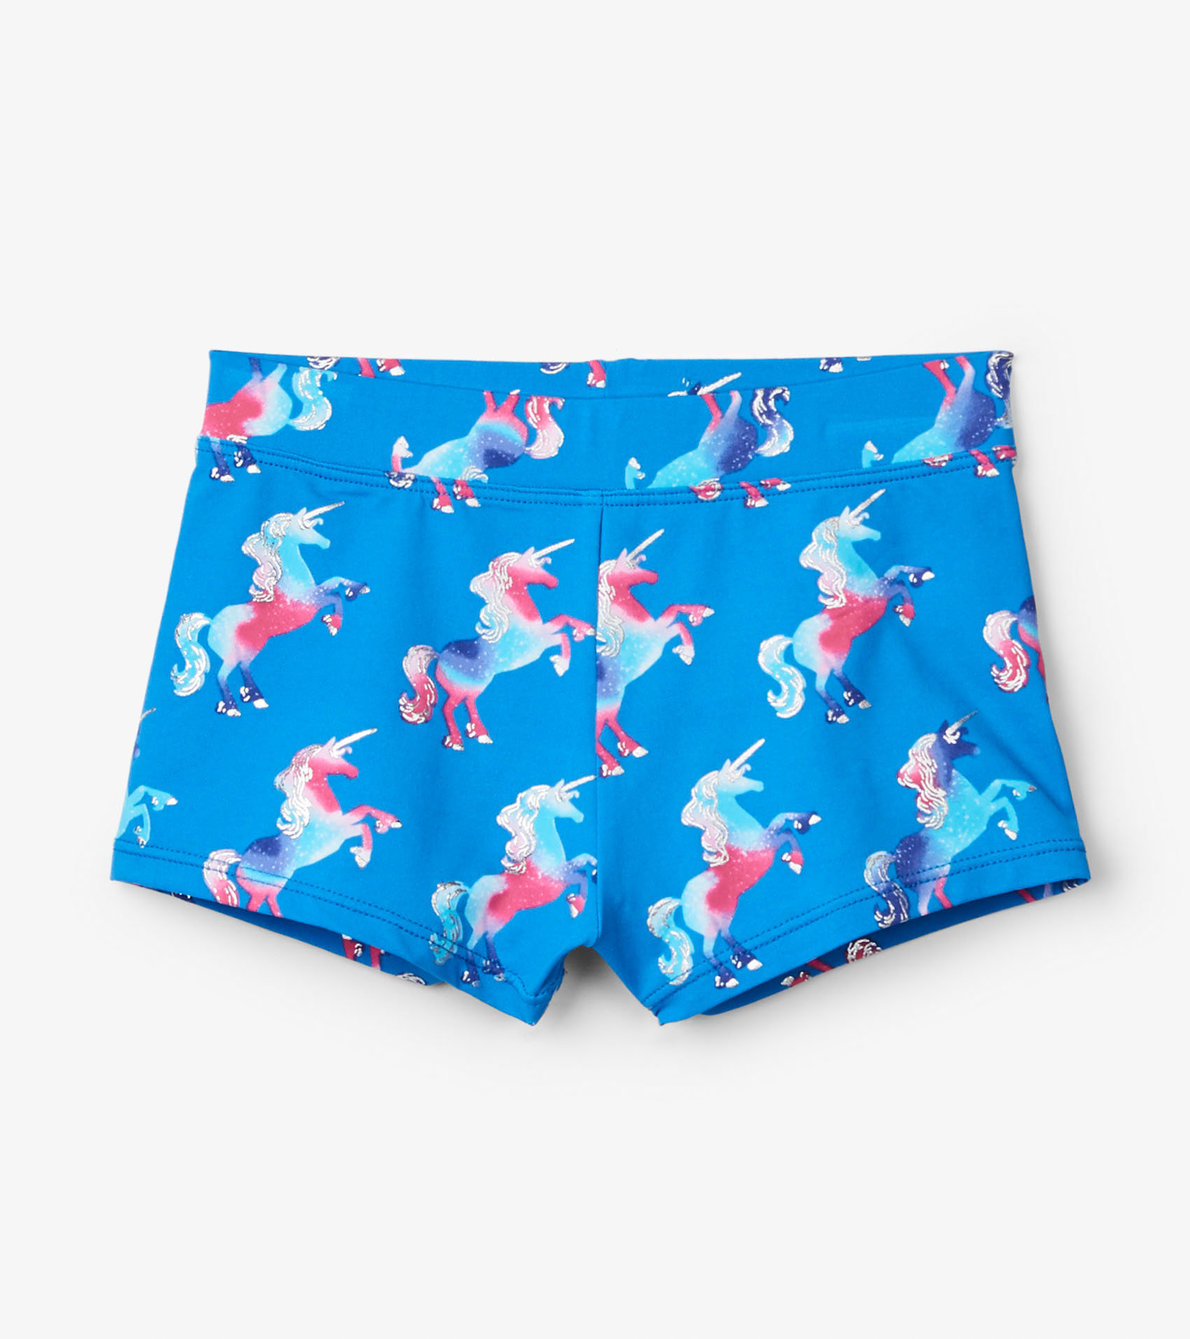 View larger image of Rainbow Unicorns Swim Shorts